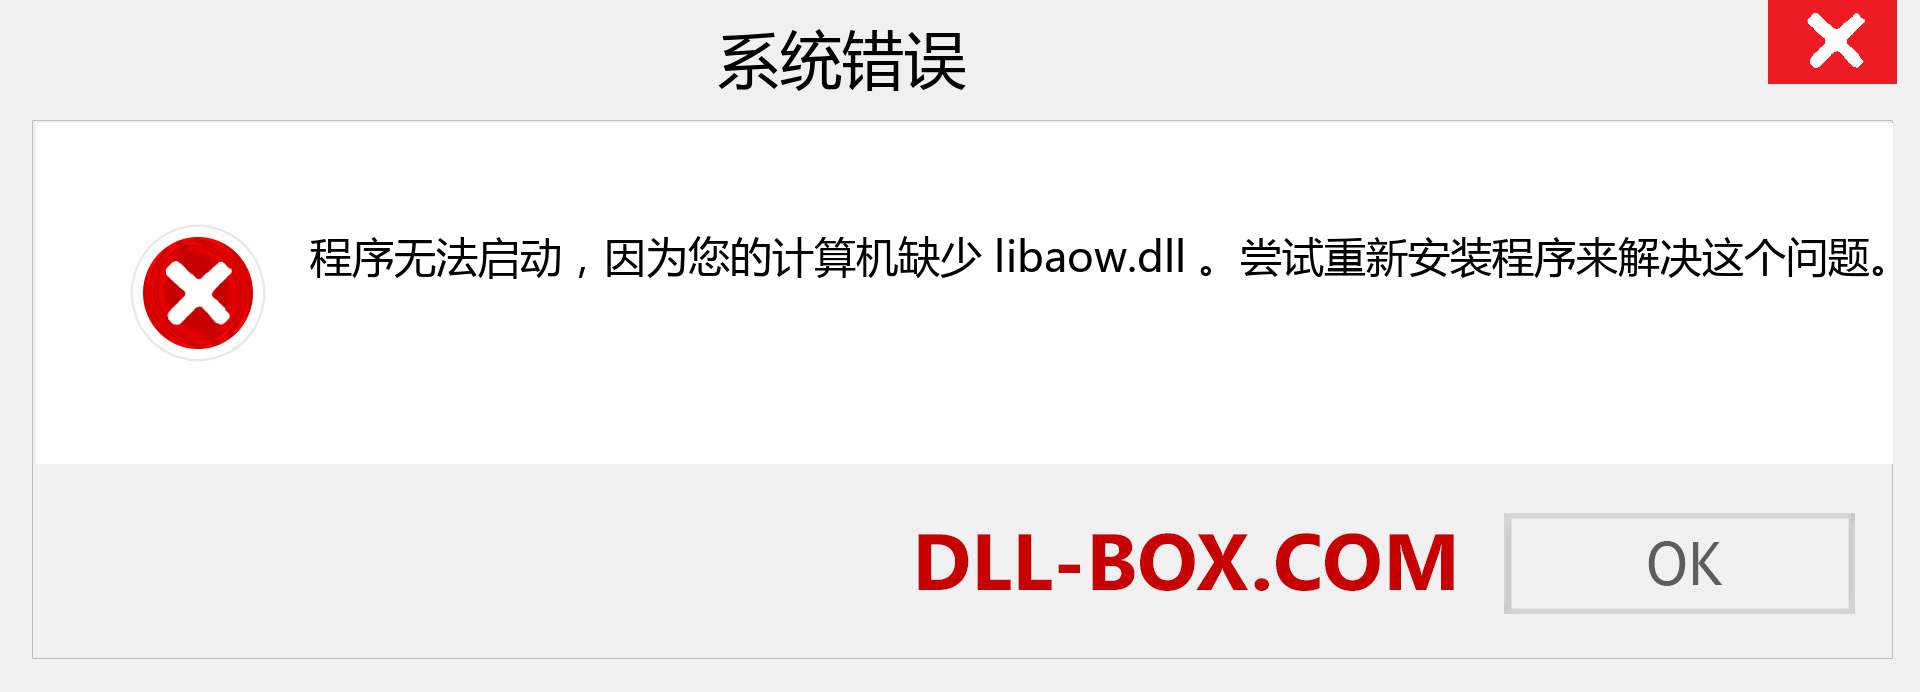 libaow.dll 文件丢失？。 适用于 Windows 7、8、10 的下载 - 修复 Windows、照片、图像上的 libaow dll 丢失错误